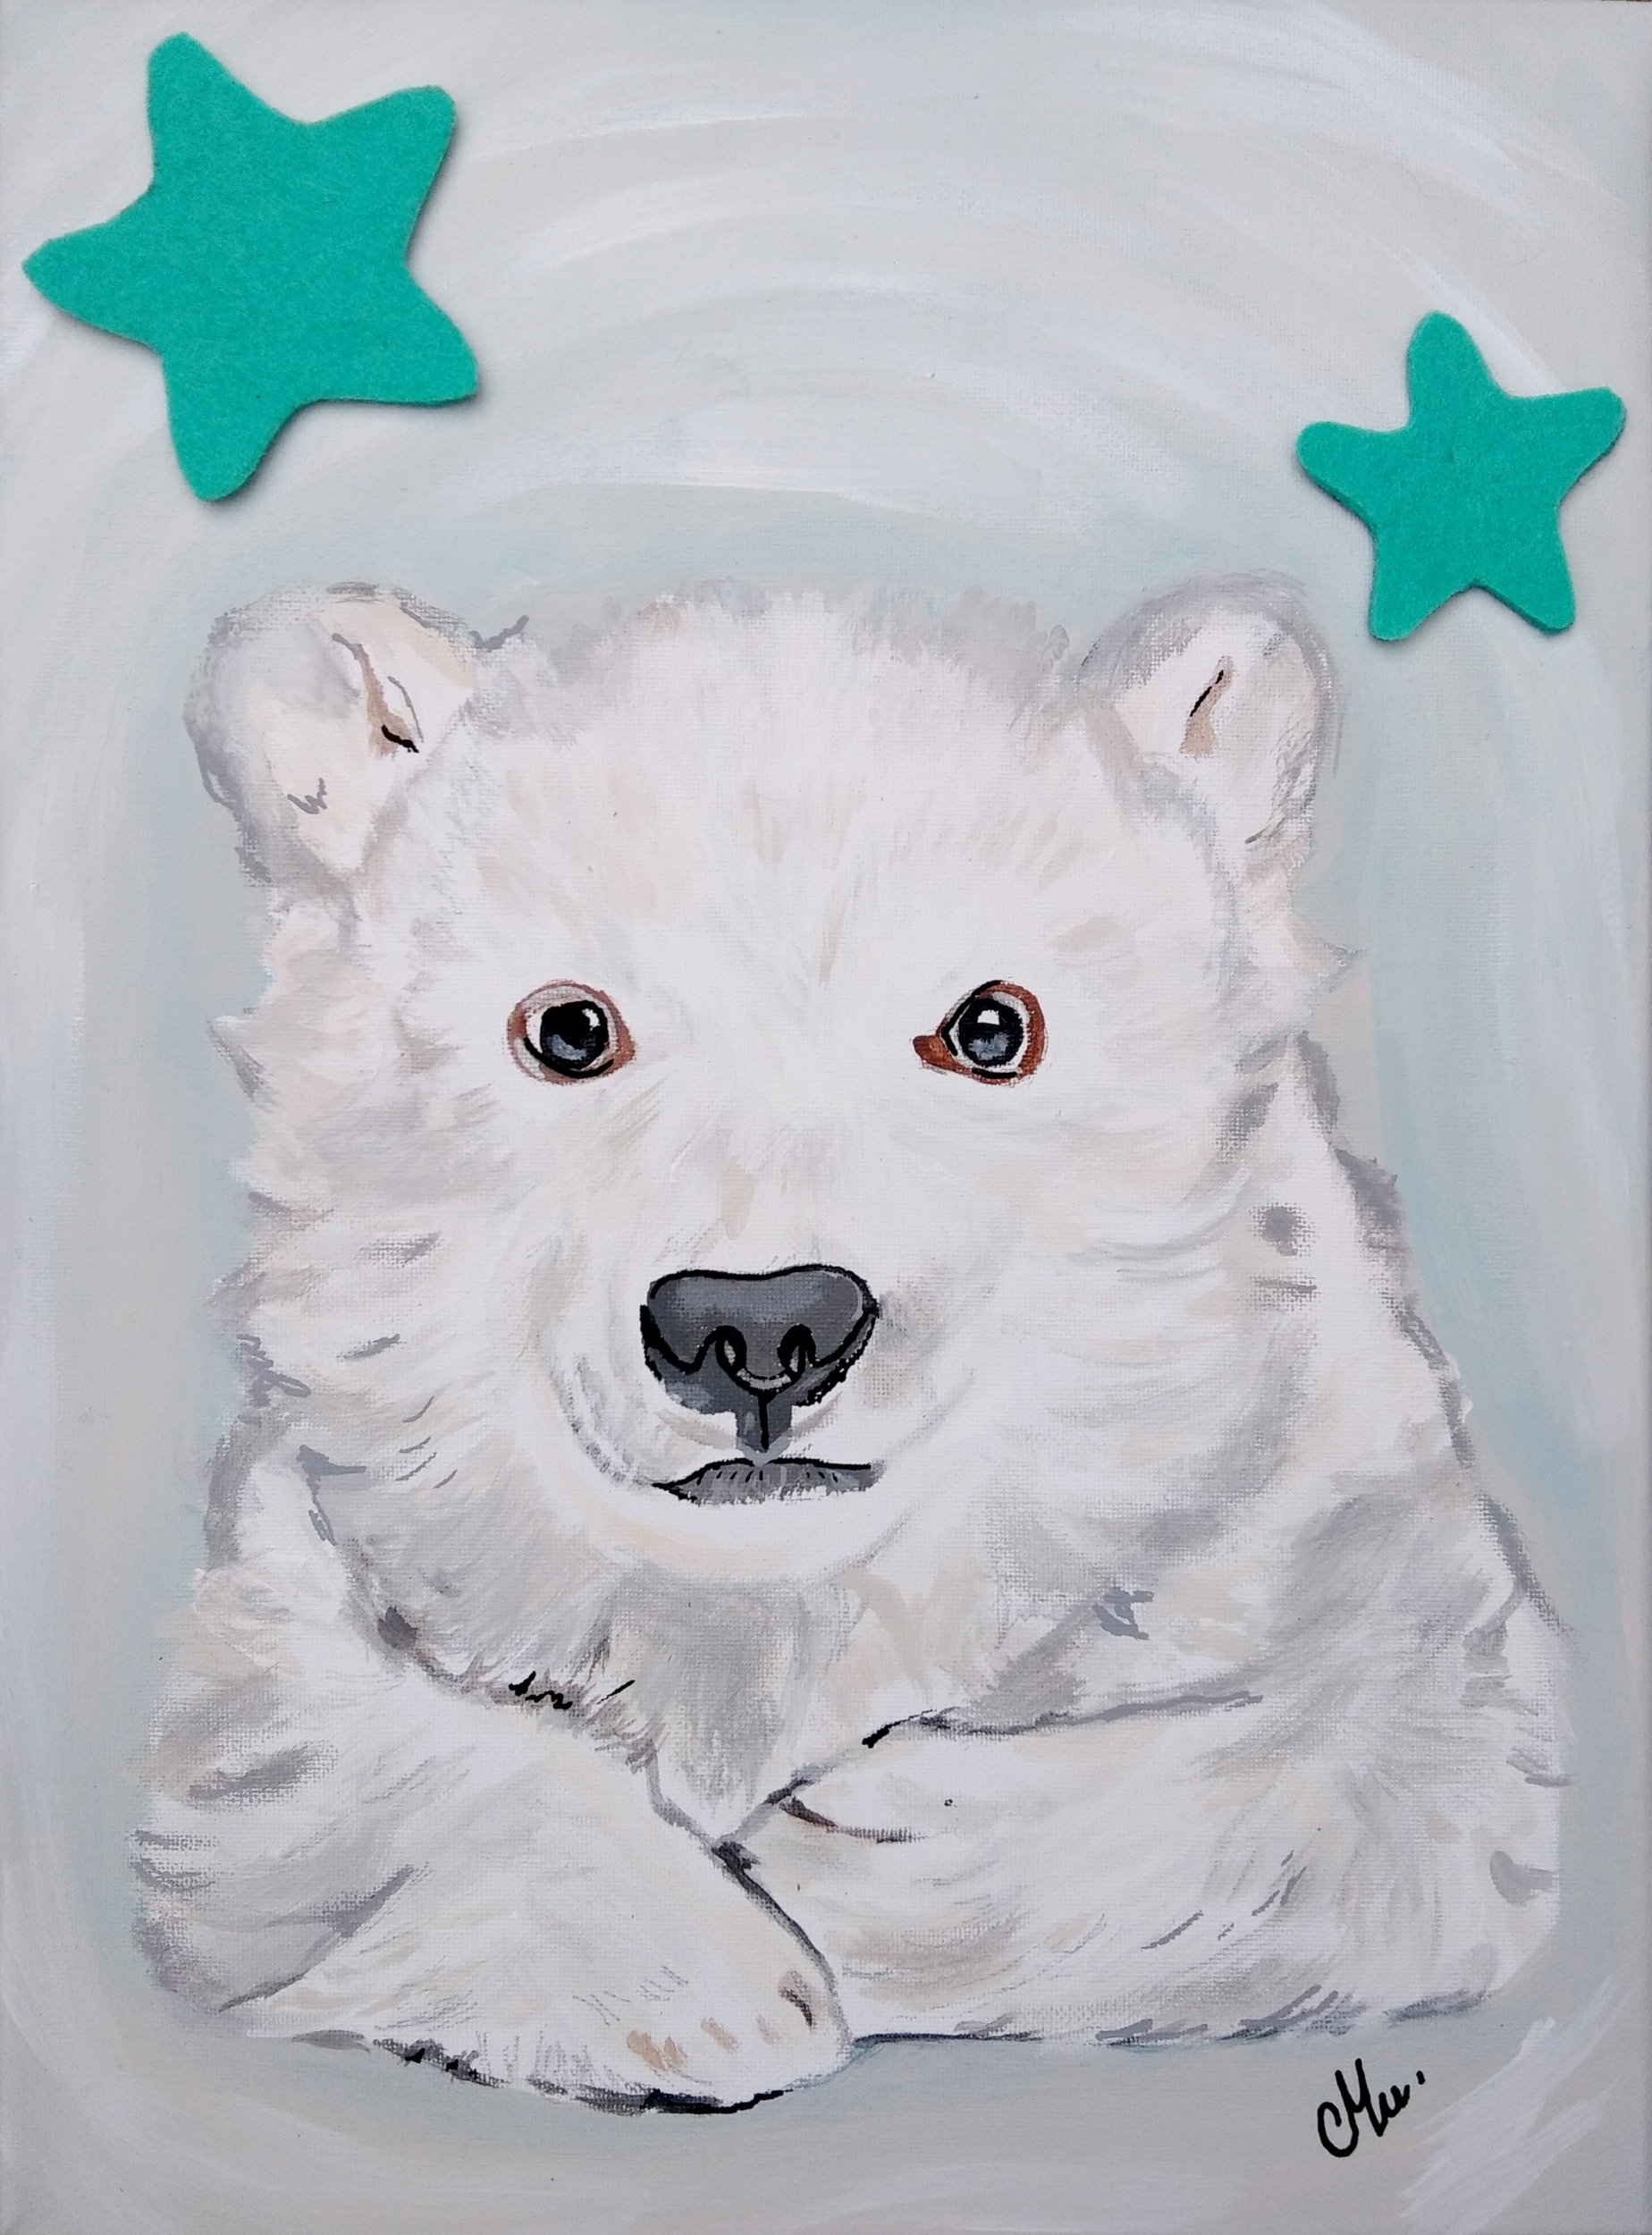 tableau déco enfant bébé ours polaire bleu blanc turquoise